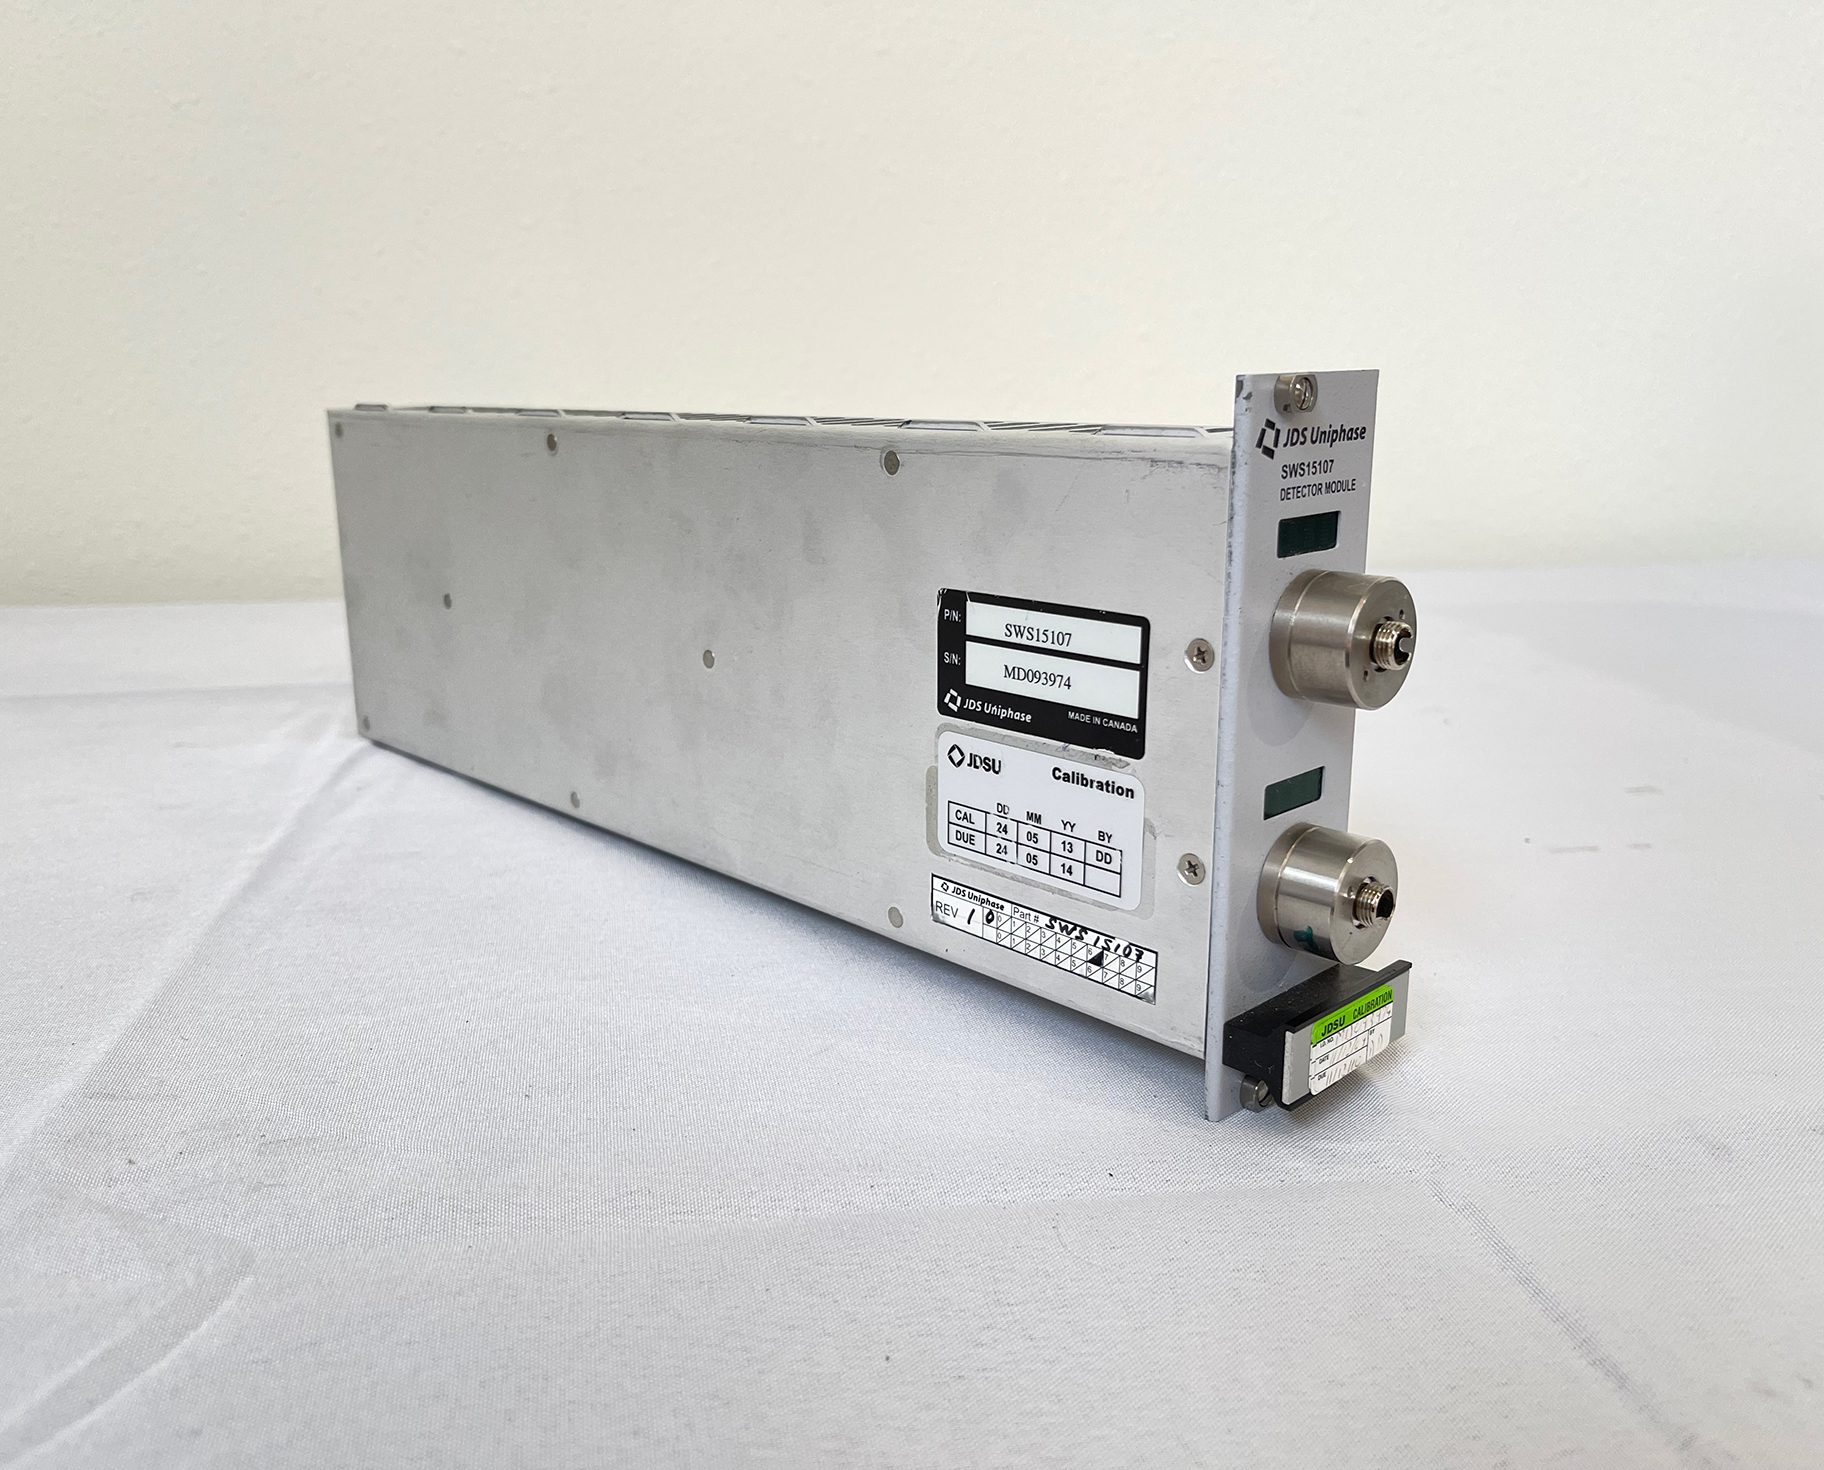 Buy Online JDSU SWS 15107 Detector Module -61963